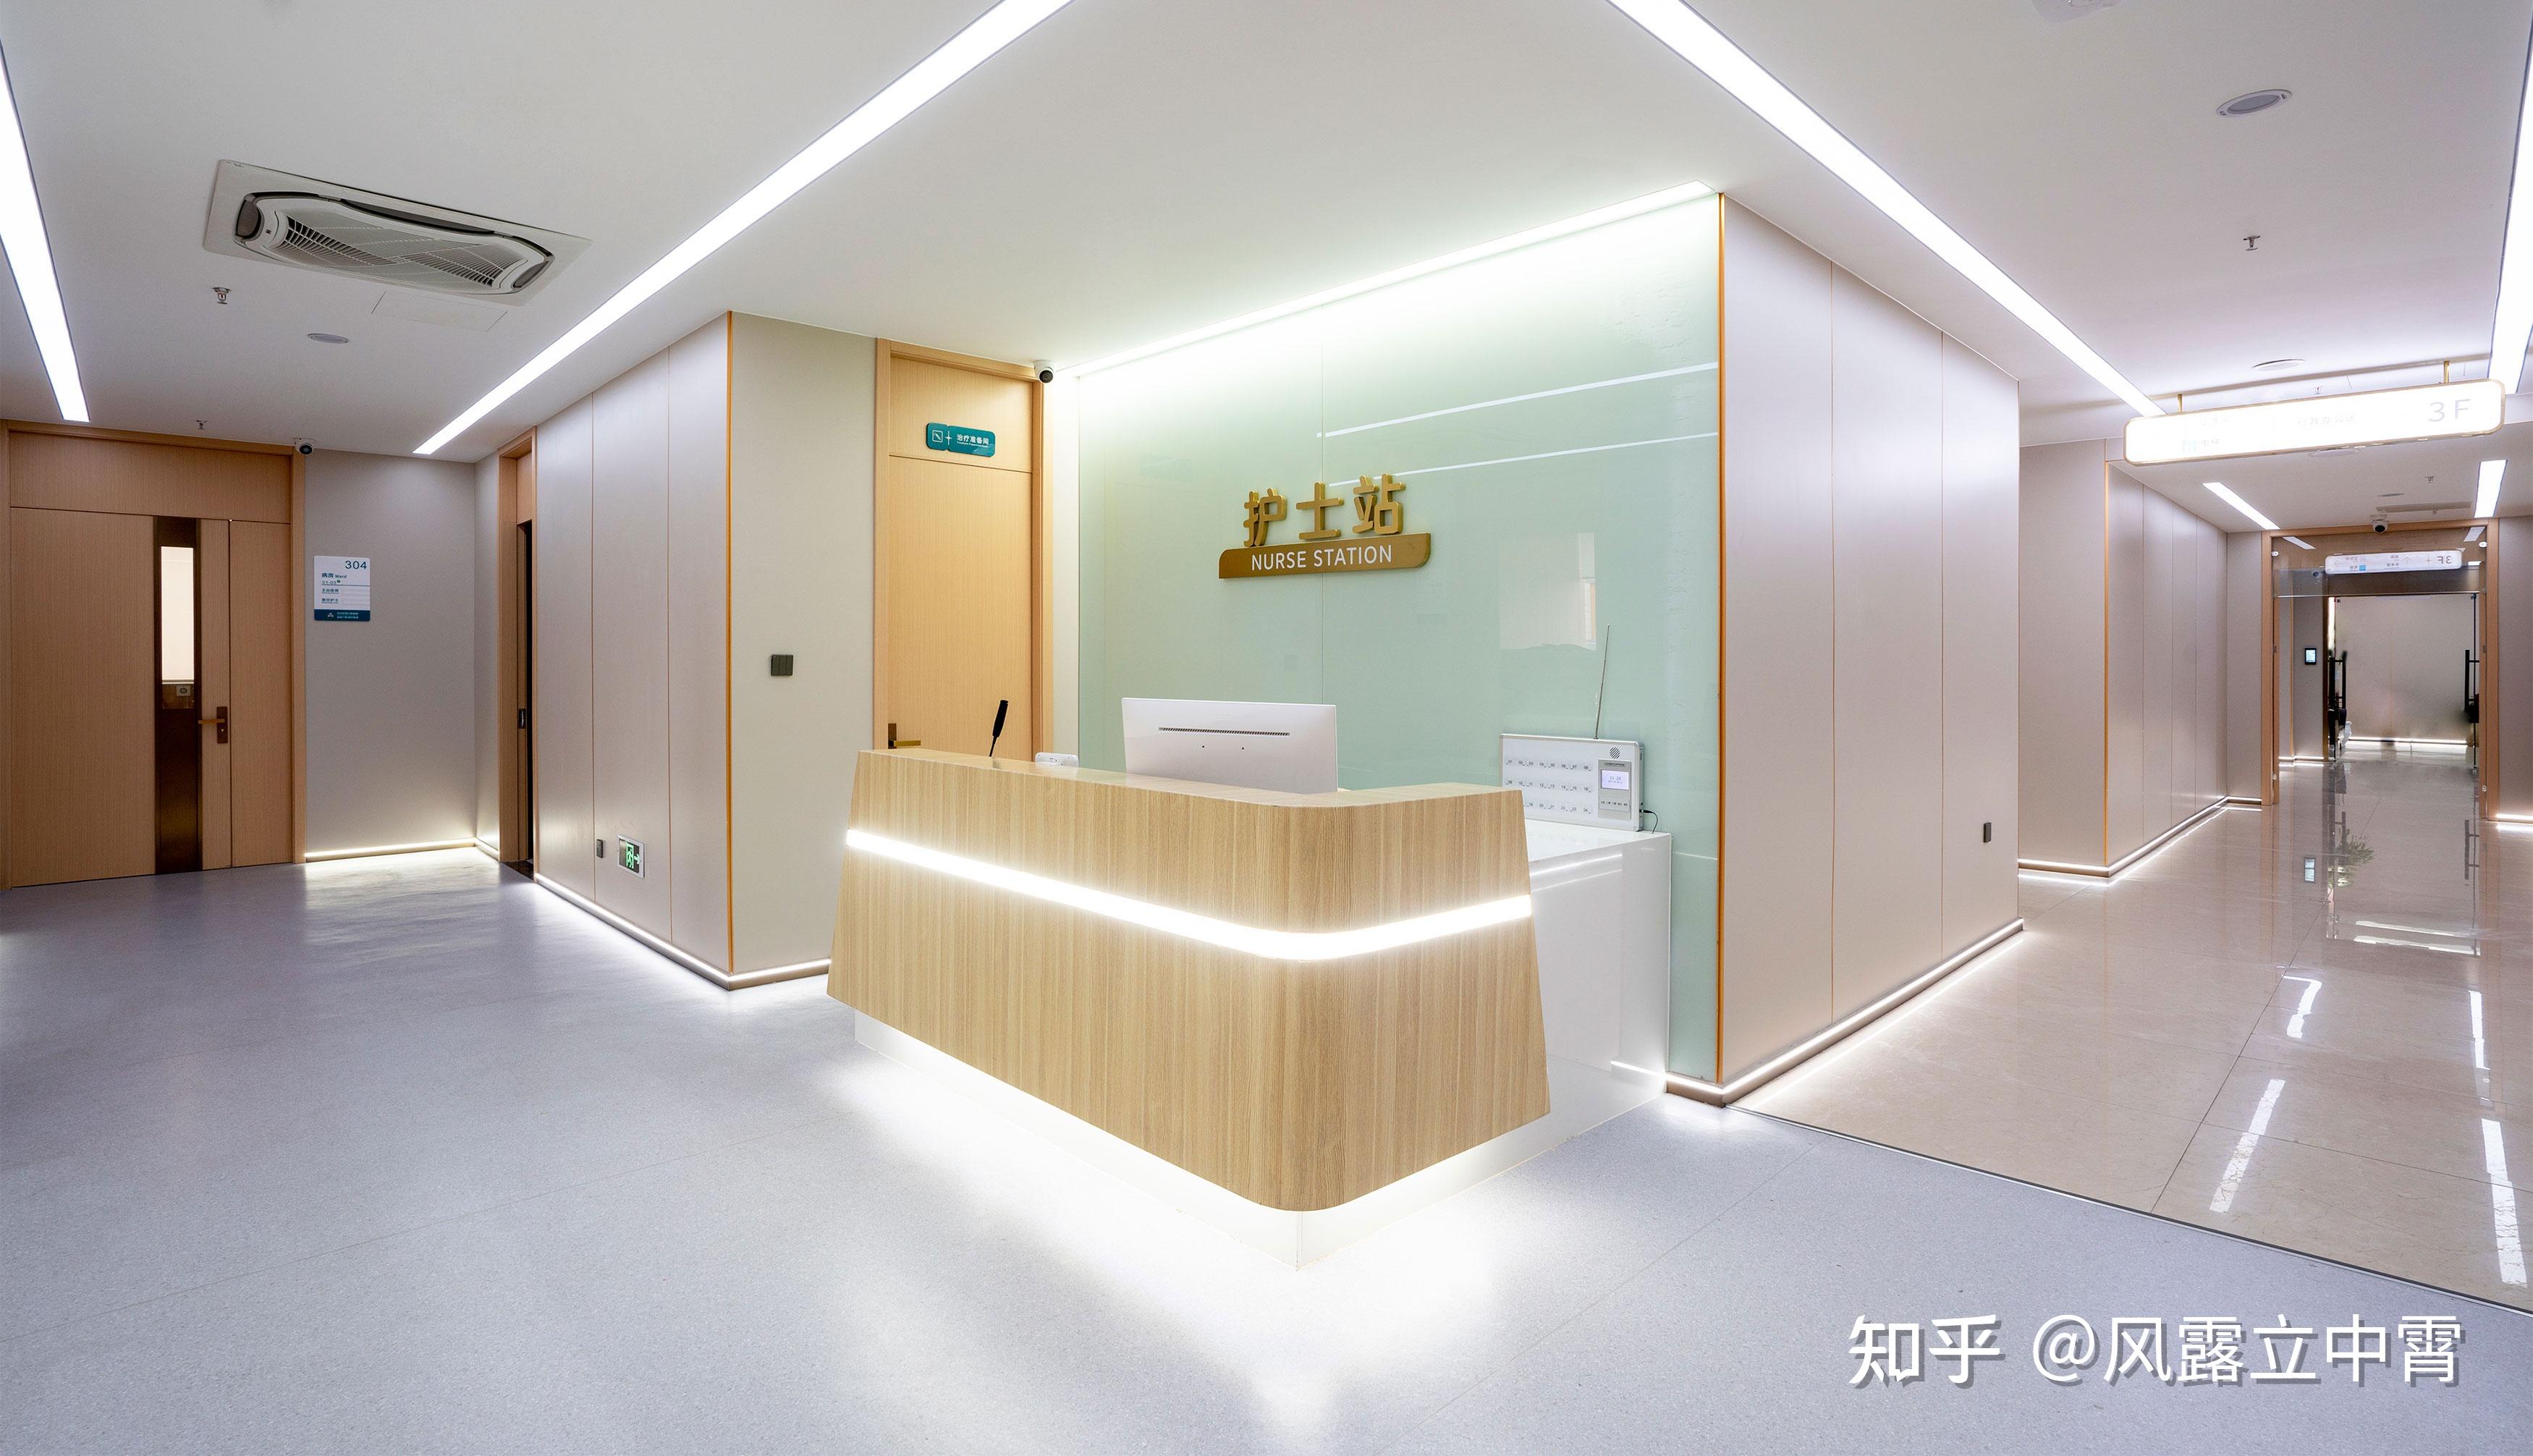 杭州新开诊的口腔医院,看完设计效果图和实景,反手就是一个赞